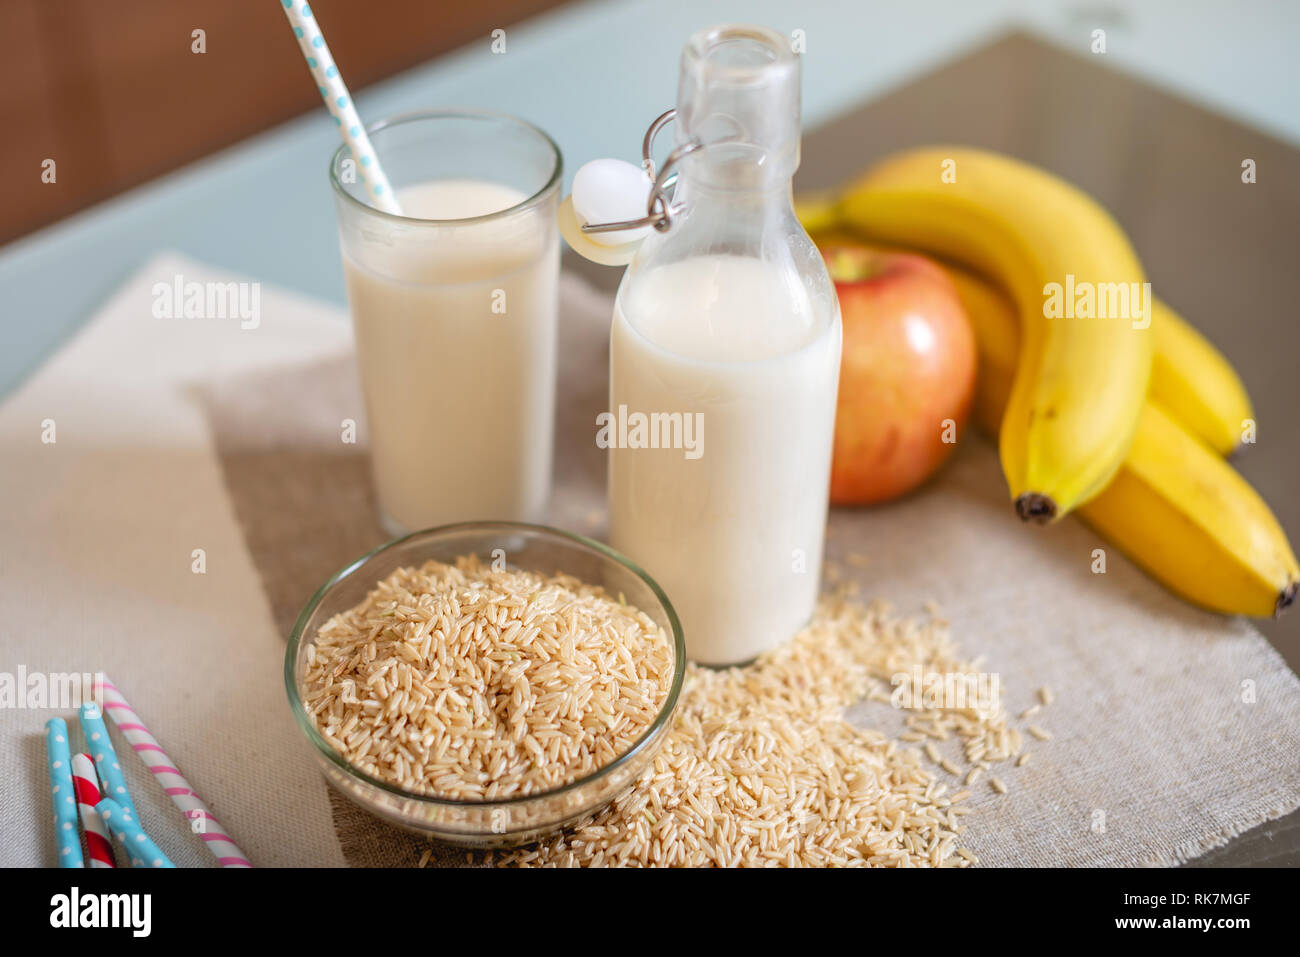 Le lait de riz dans une tasse en verre et des fruits avec des grains de riz sur la table dans la cuisine. Produit végétarien sain de régime Banque D'Images